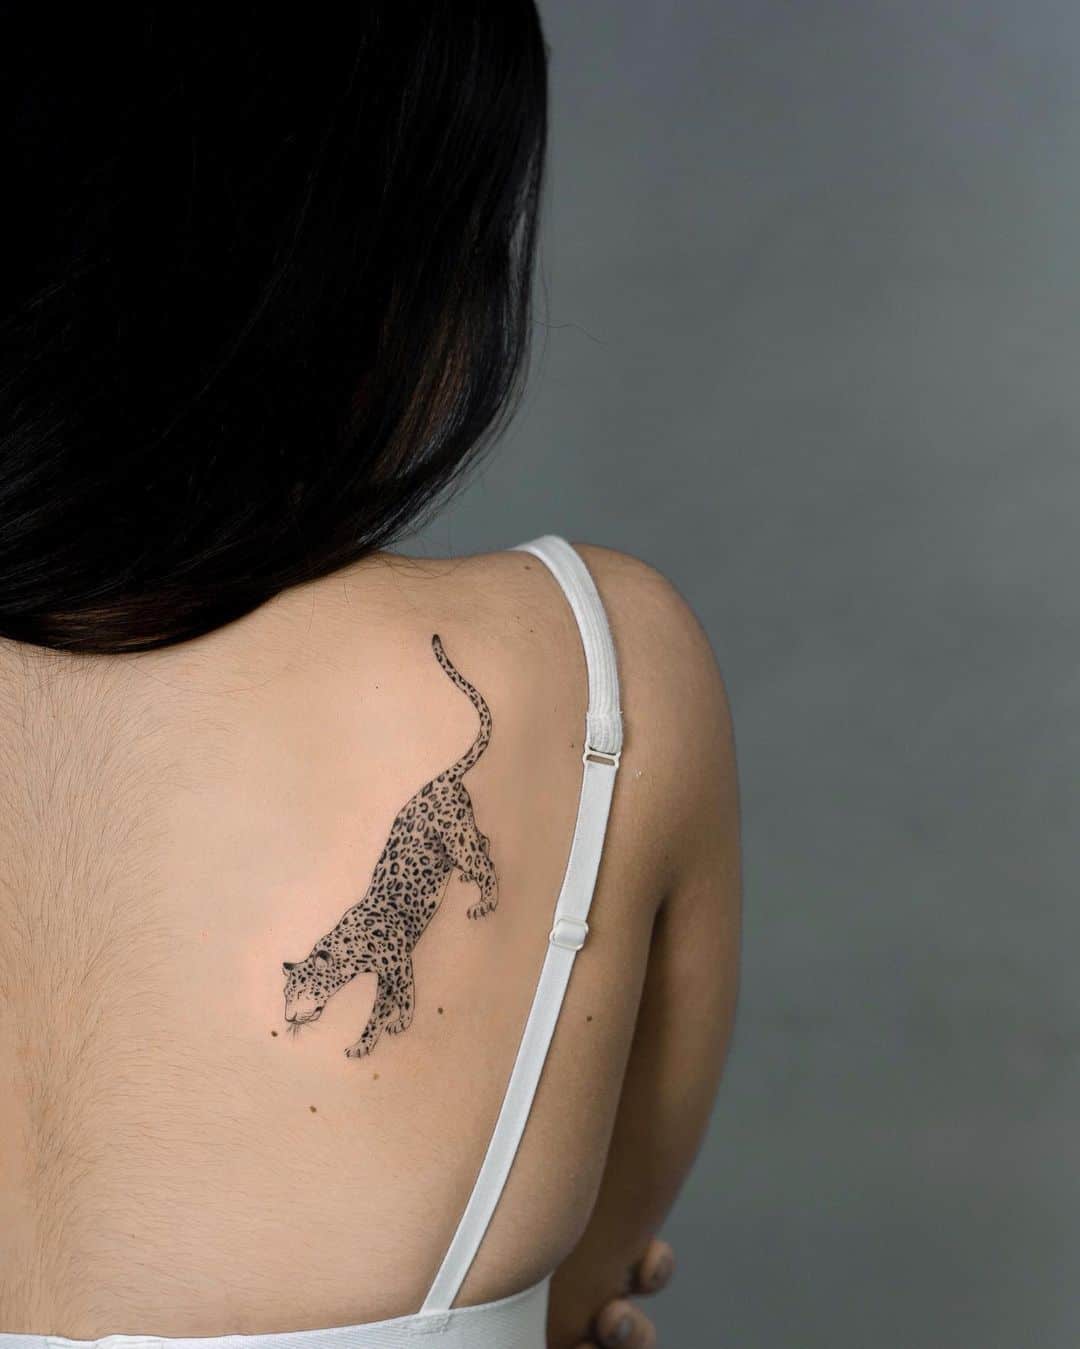 Leopard tattoo by cristinasantats